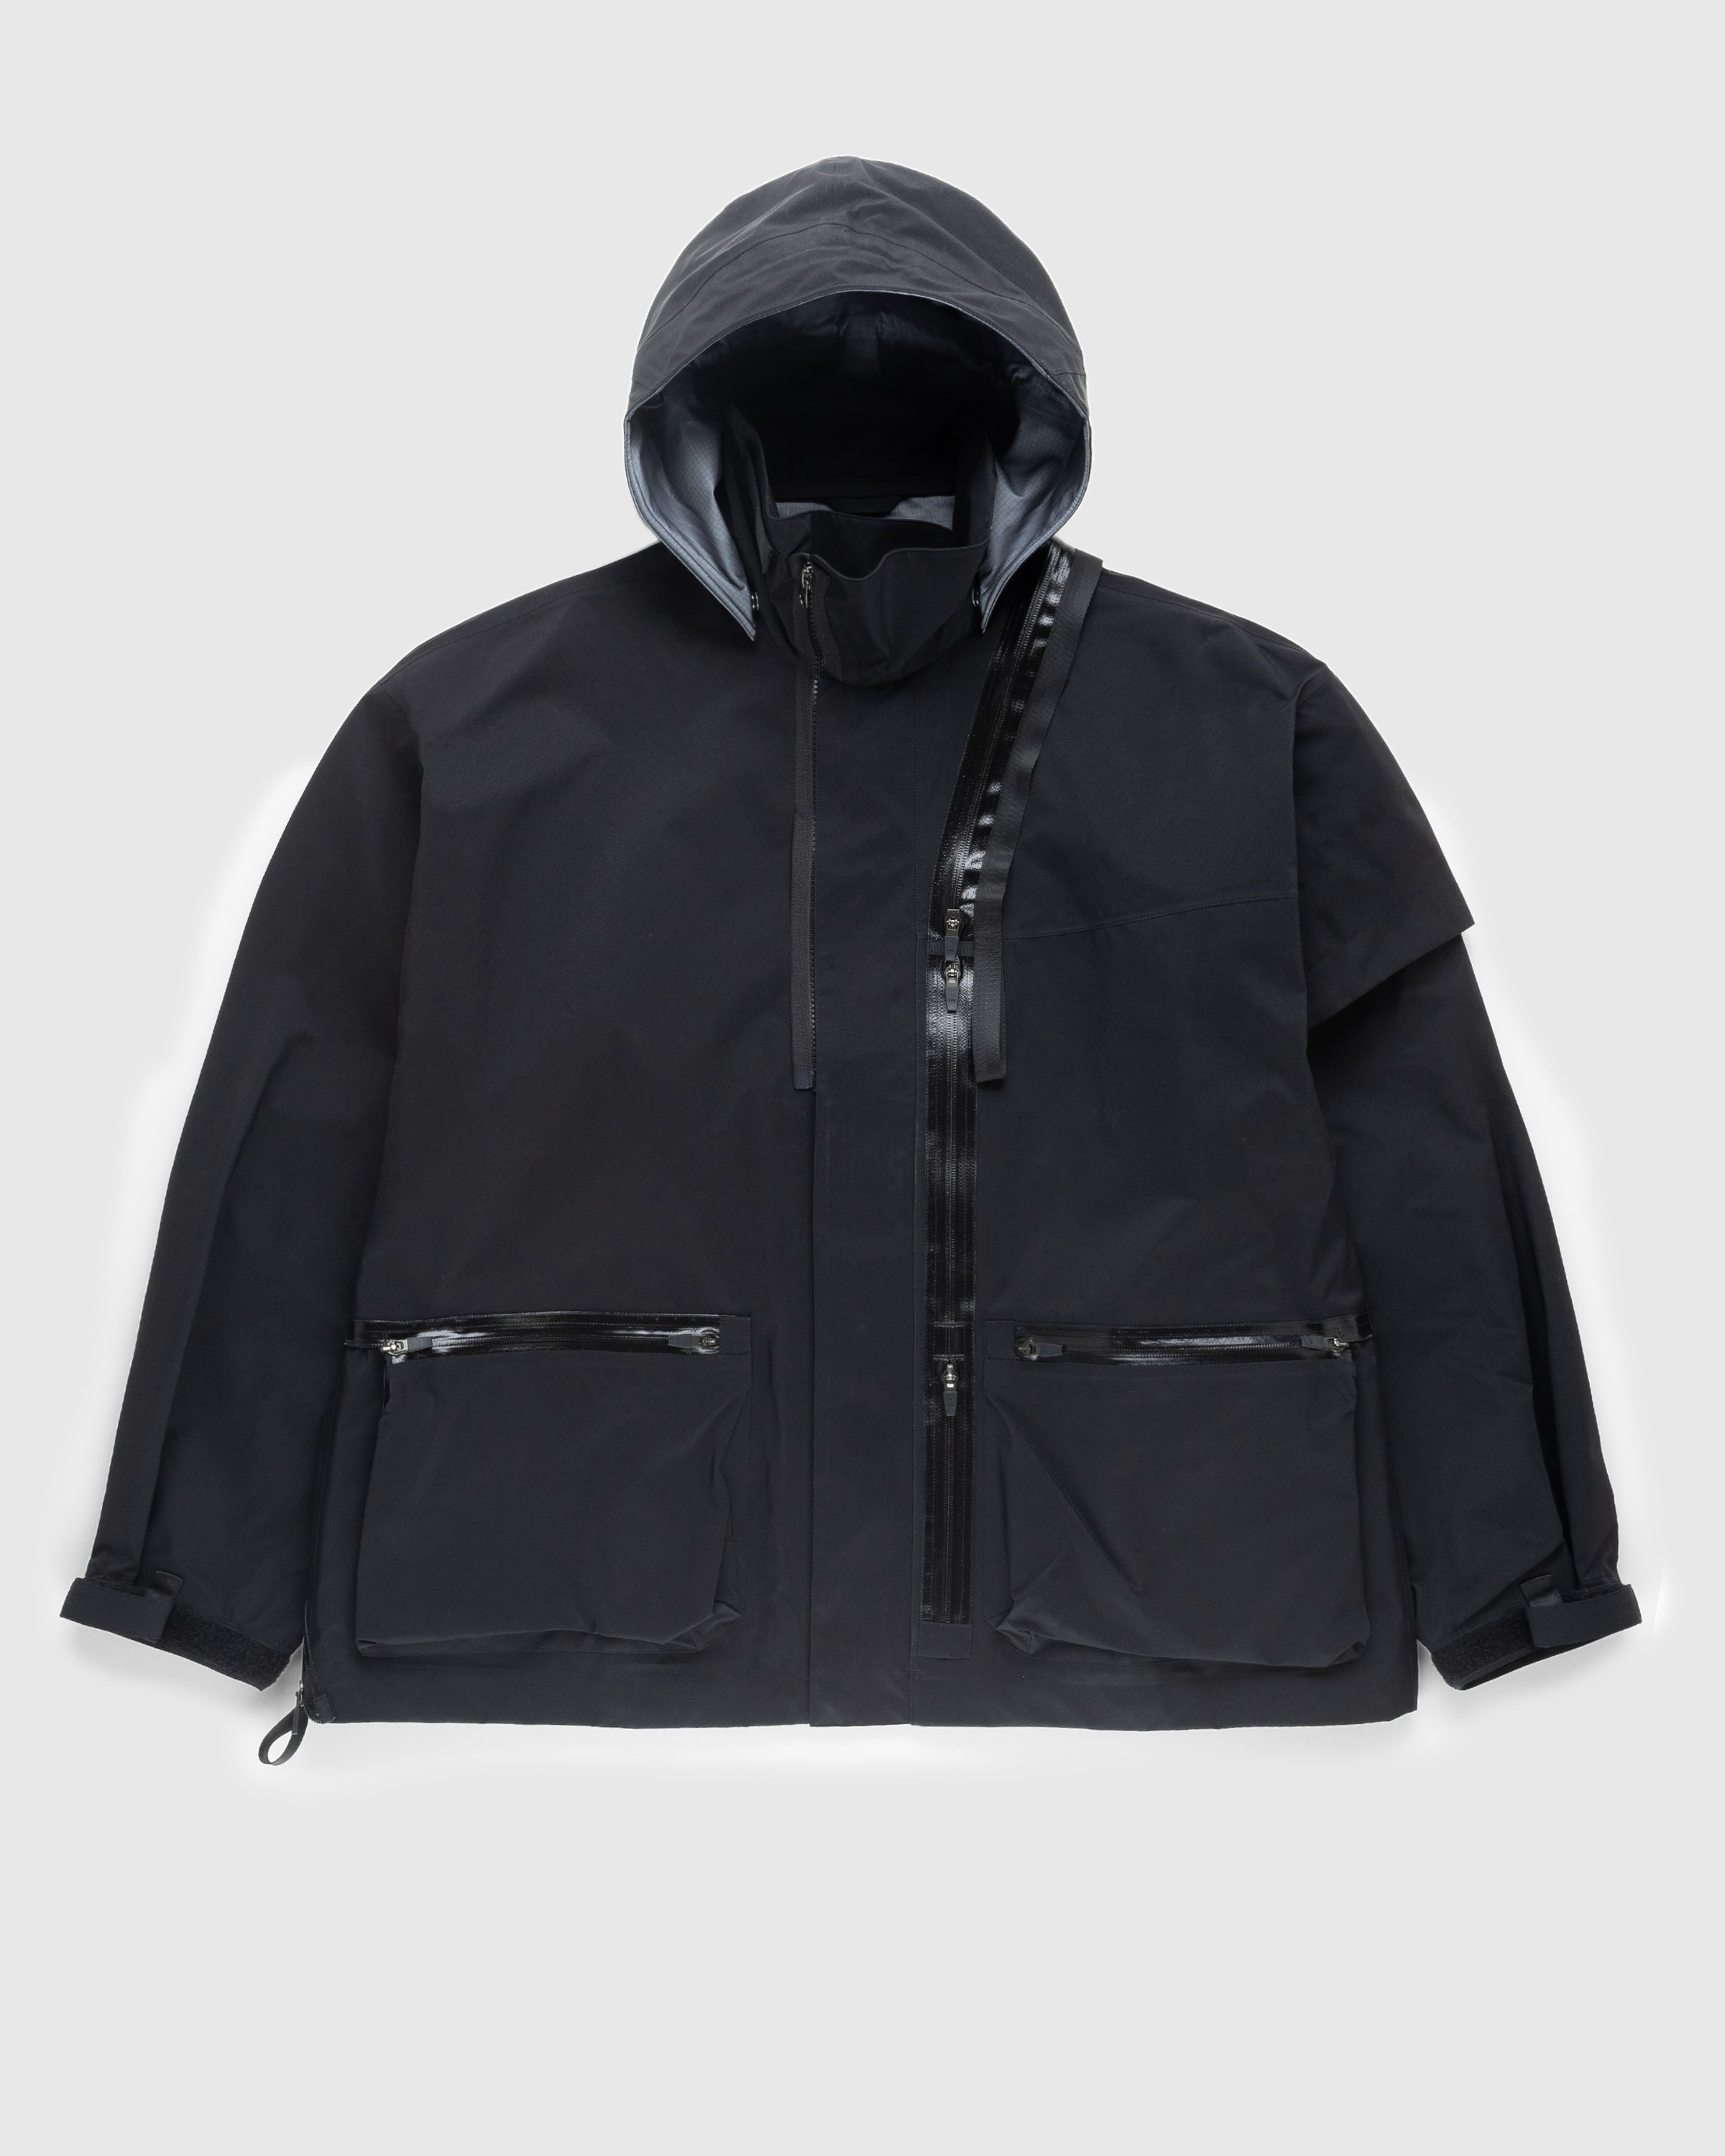 ACRONYM - J115-GT Jacket Black - Clothing - Black - Image 1